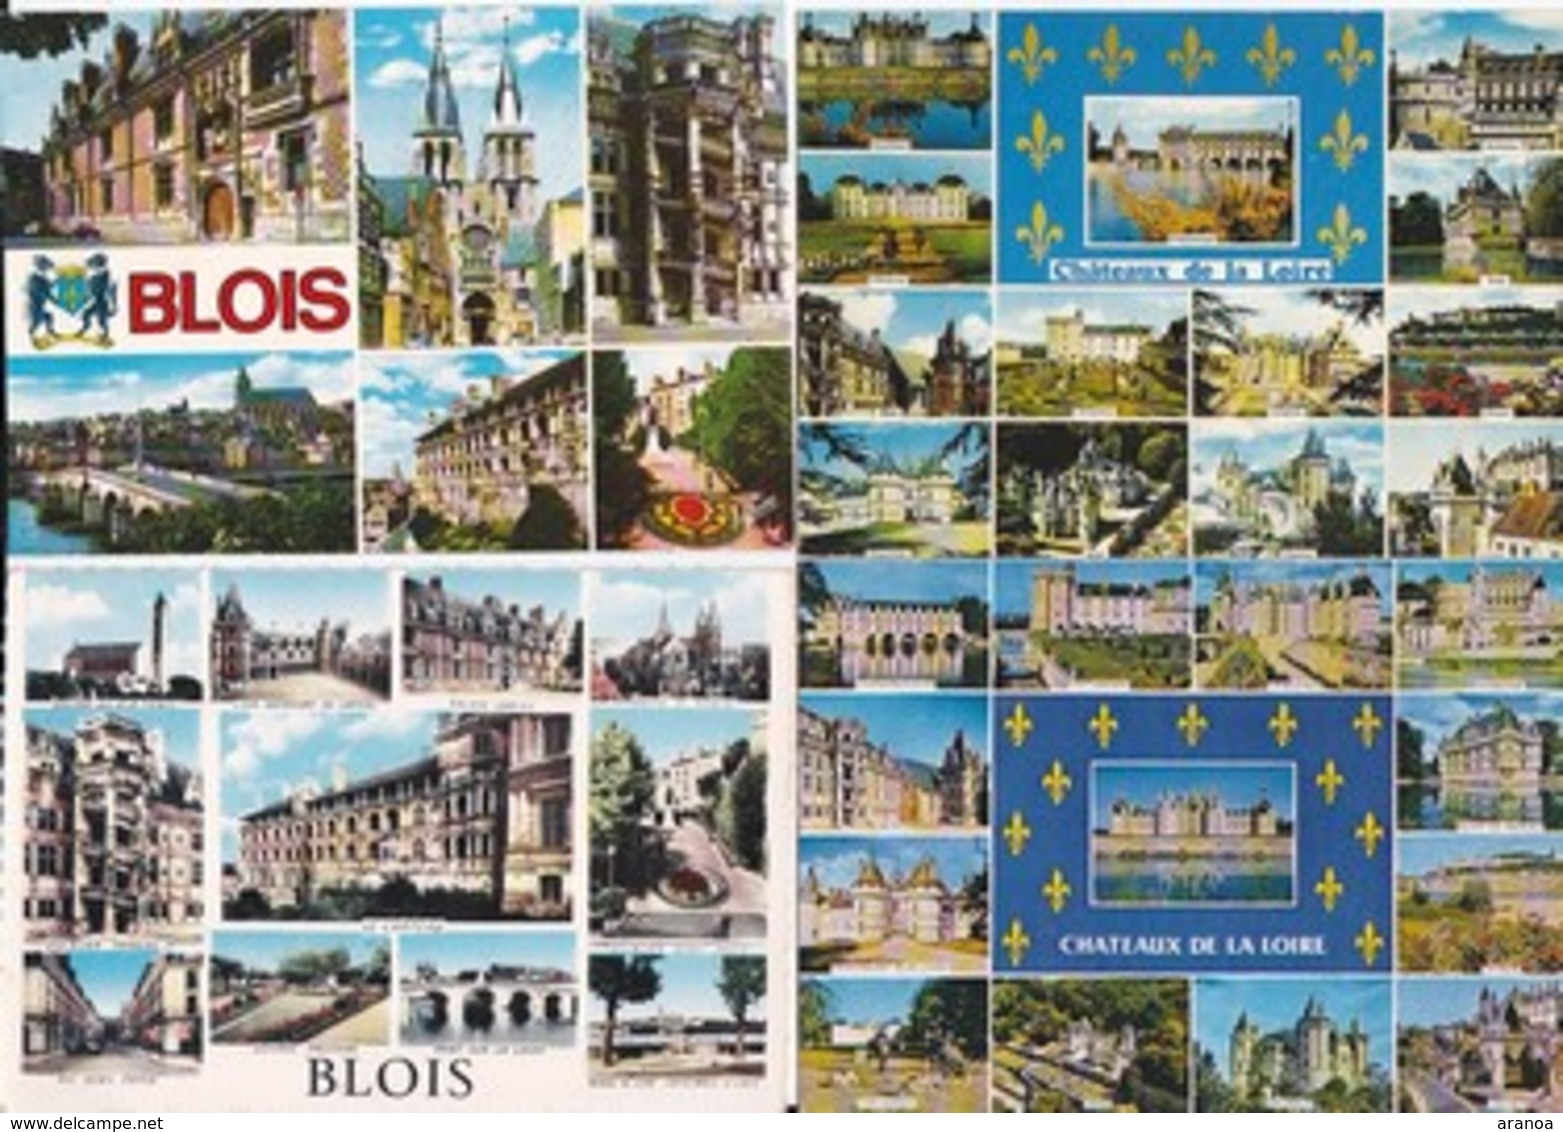 France -- Départements différents (03) -- Multivues -- Lot de 80 cartes